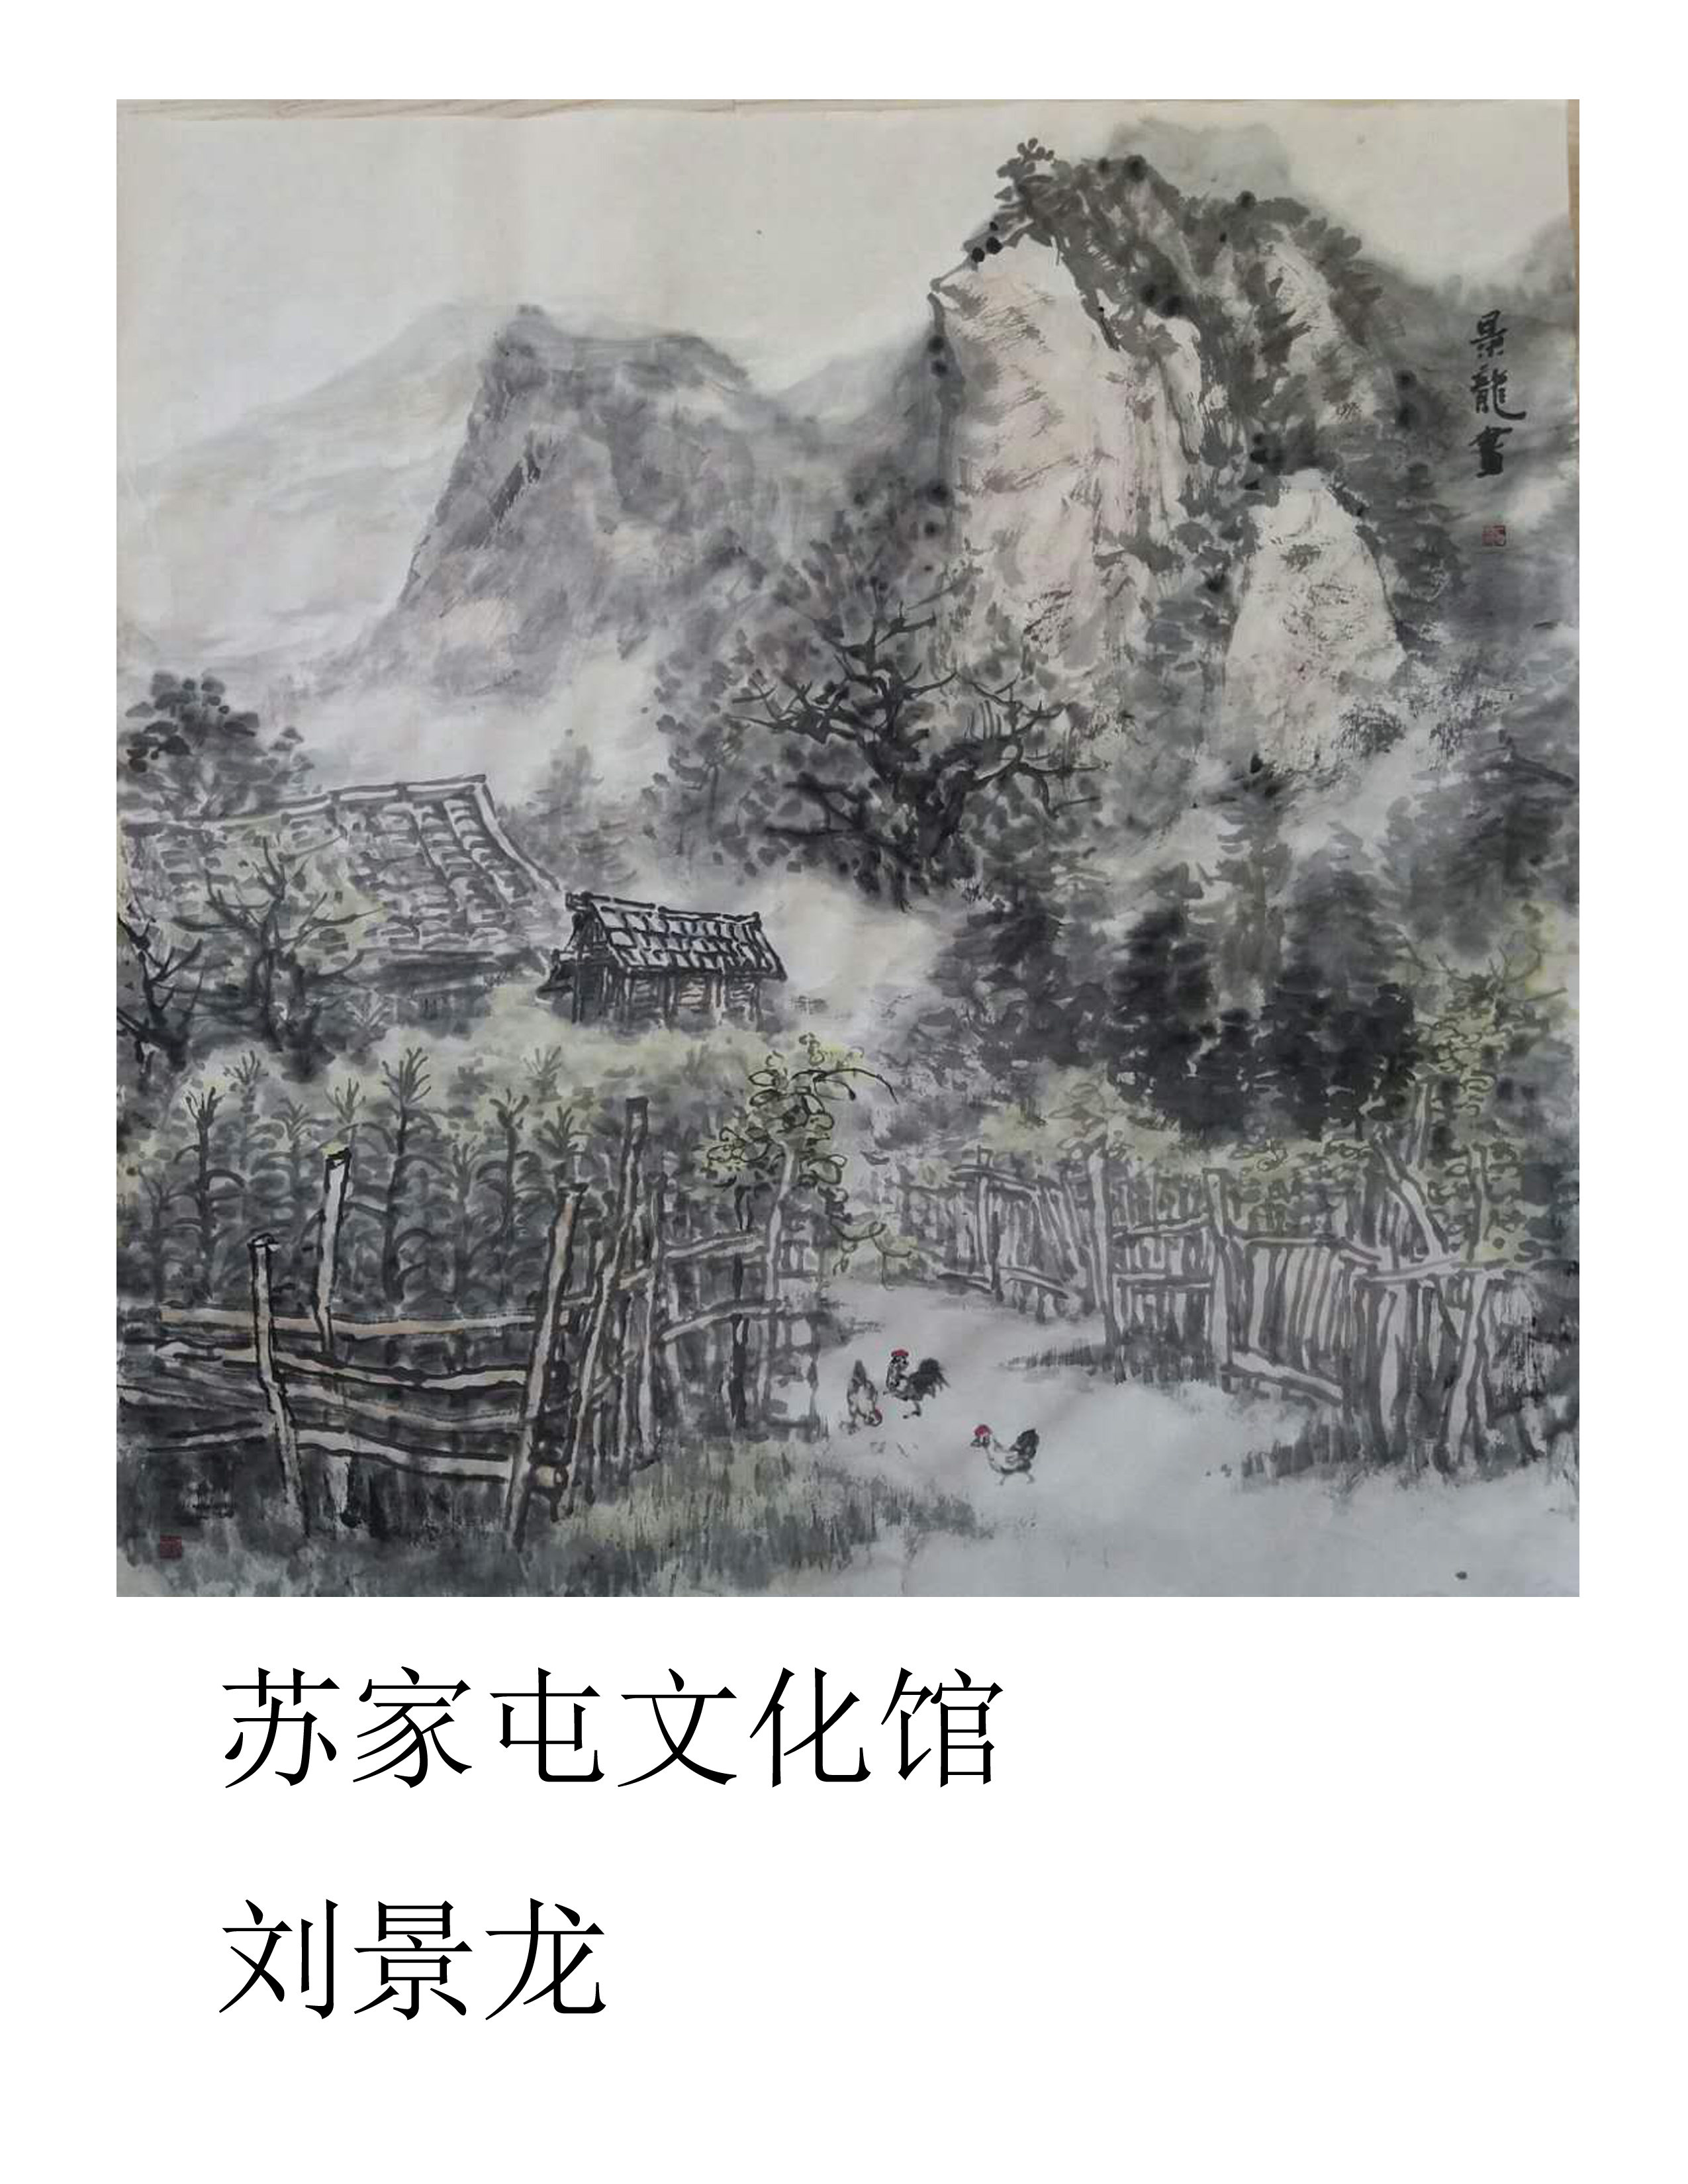 刘景龙-远山的家.jpg